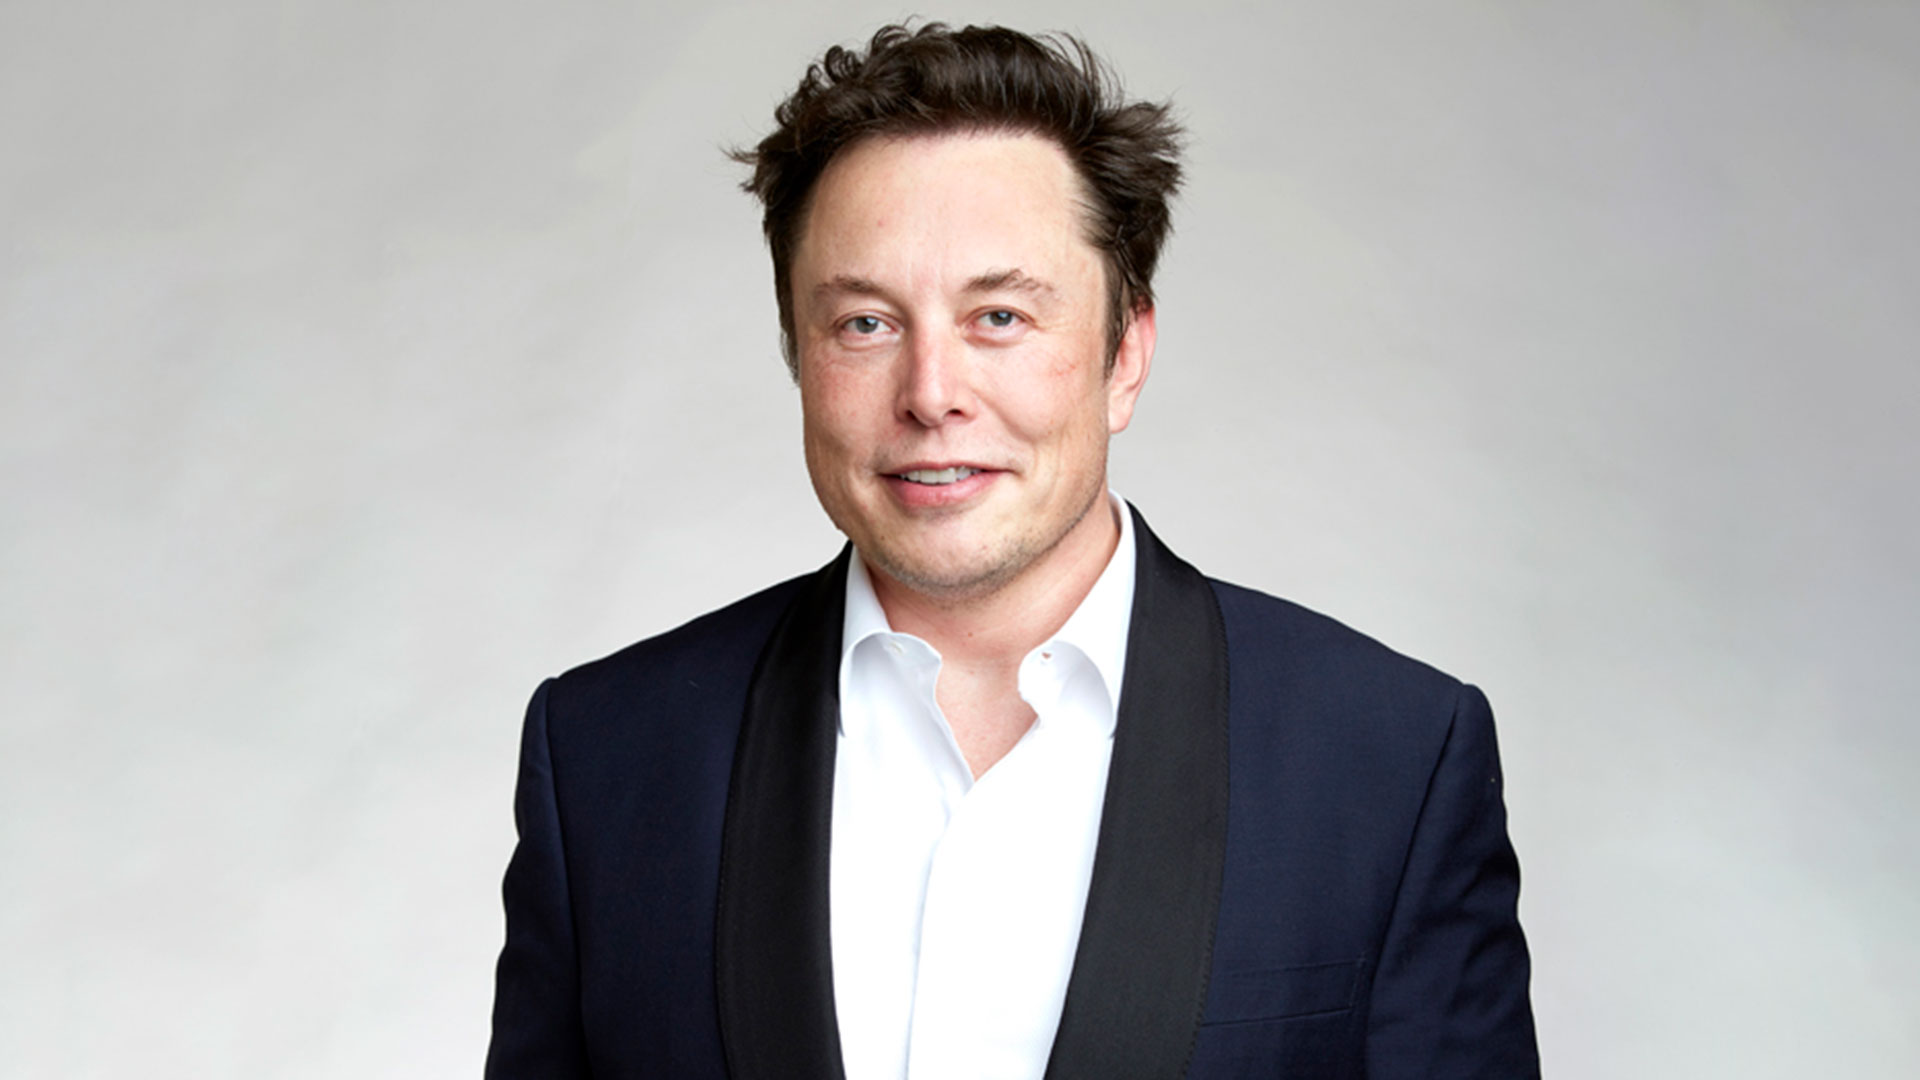 Elon Musk es dueño de empresas como Tesla, SpaceX y Twitter